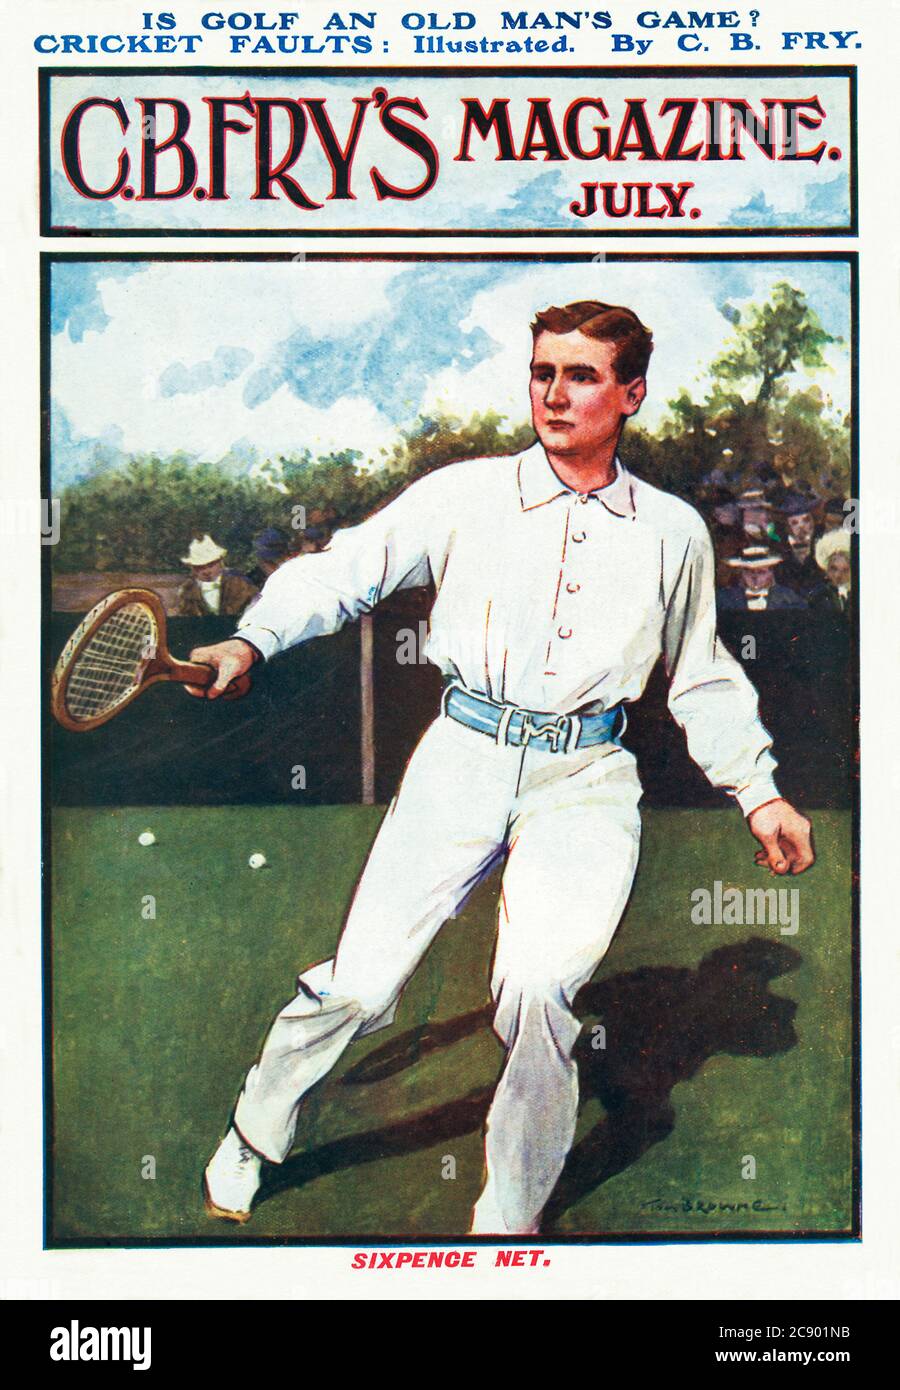 Tennis, Fry's Magazine, 1905 Portada de la revista deportiva Edwardian editada por el gran deportista de Inglaterra Foto de stock